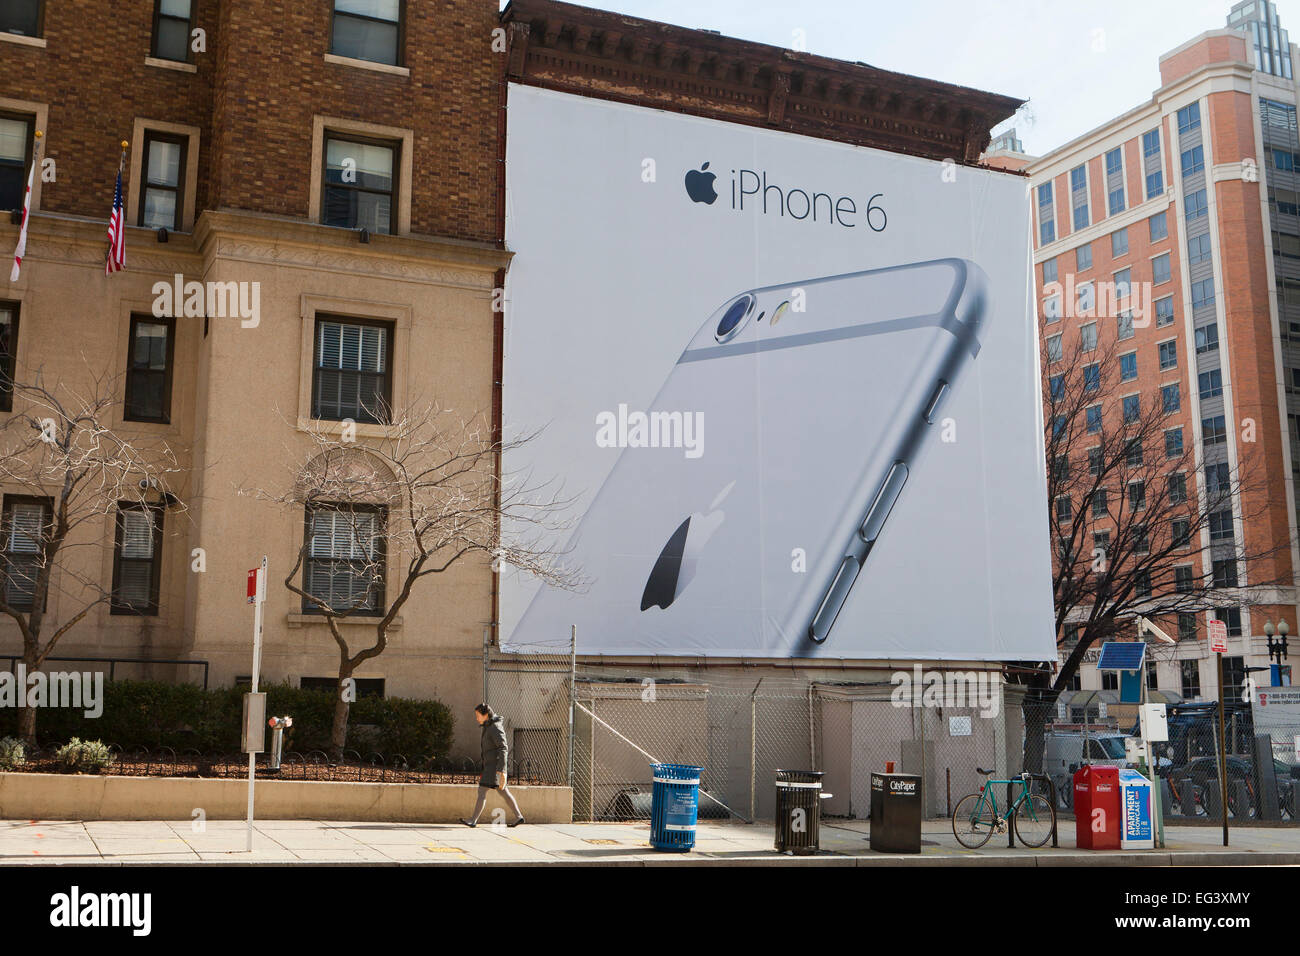 L'iPhone 6 Apple annonce sur le côté du bâtiment - Washington, DC USA Banque D'Images